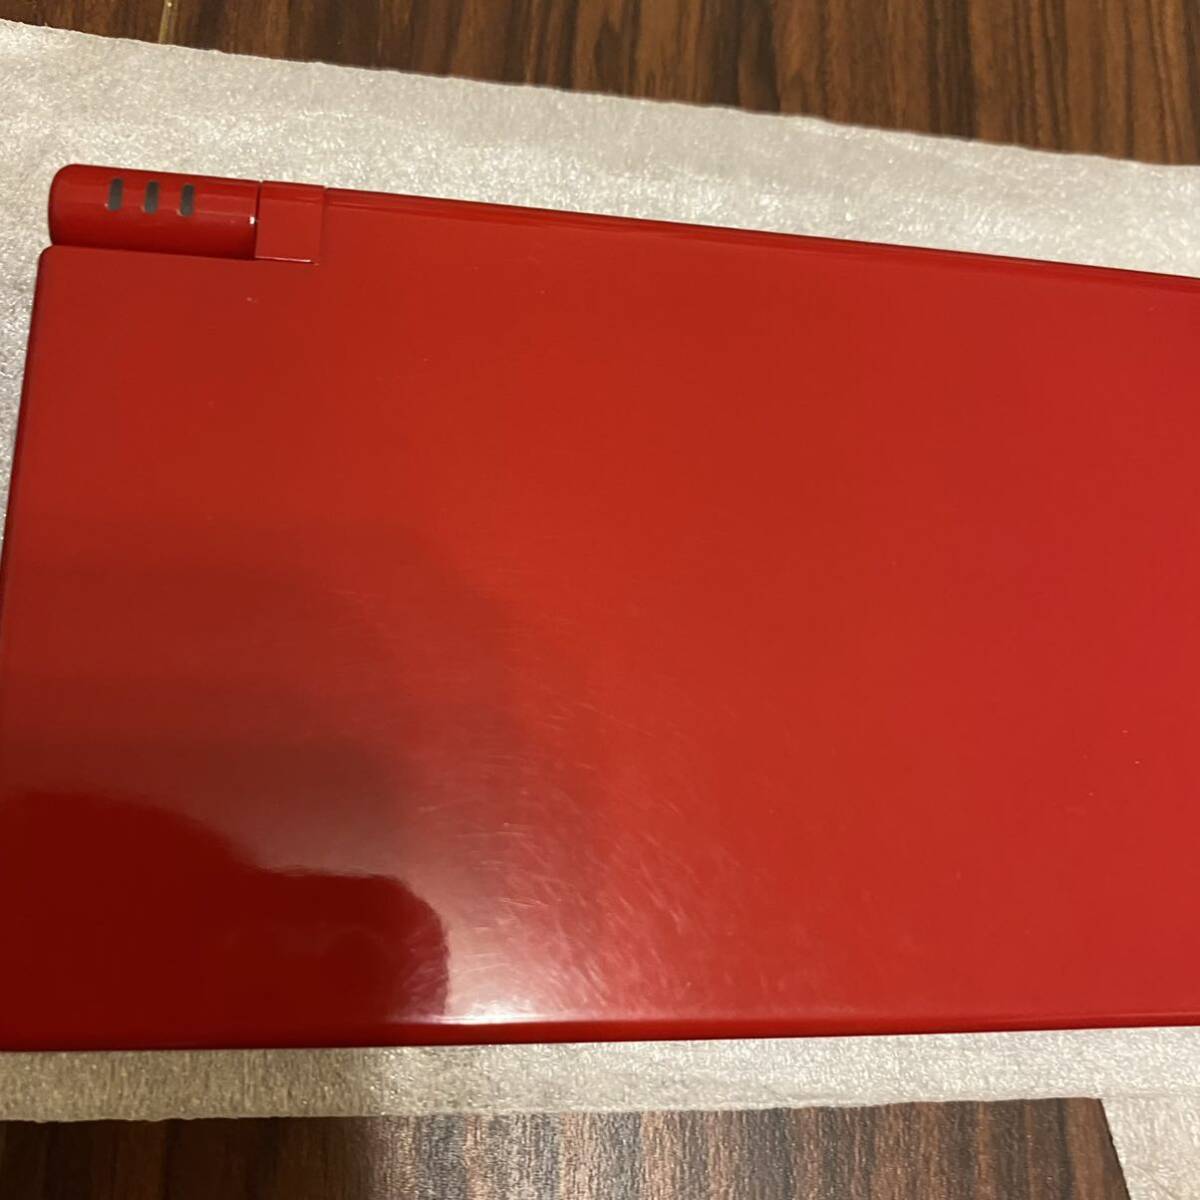 [ превосходный товар ] Nintendo DSi( красный )